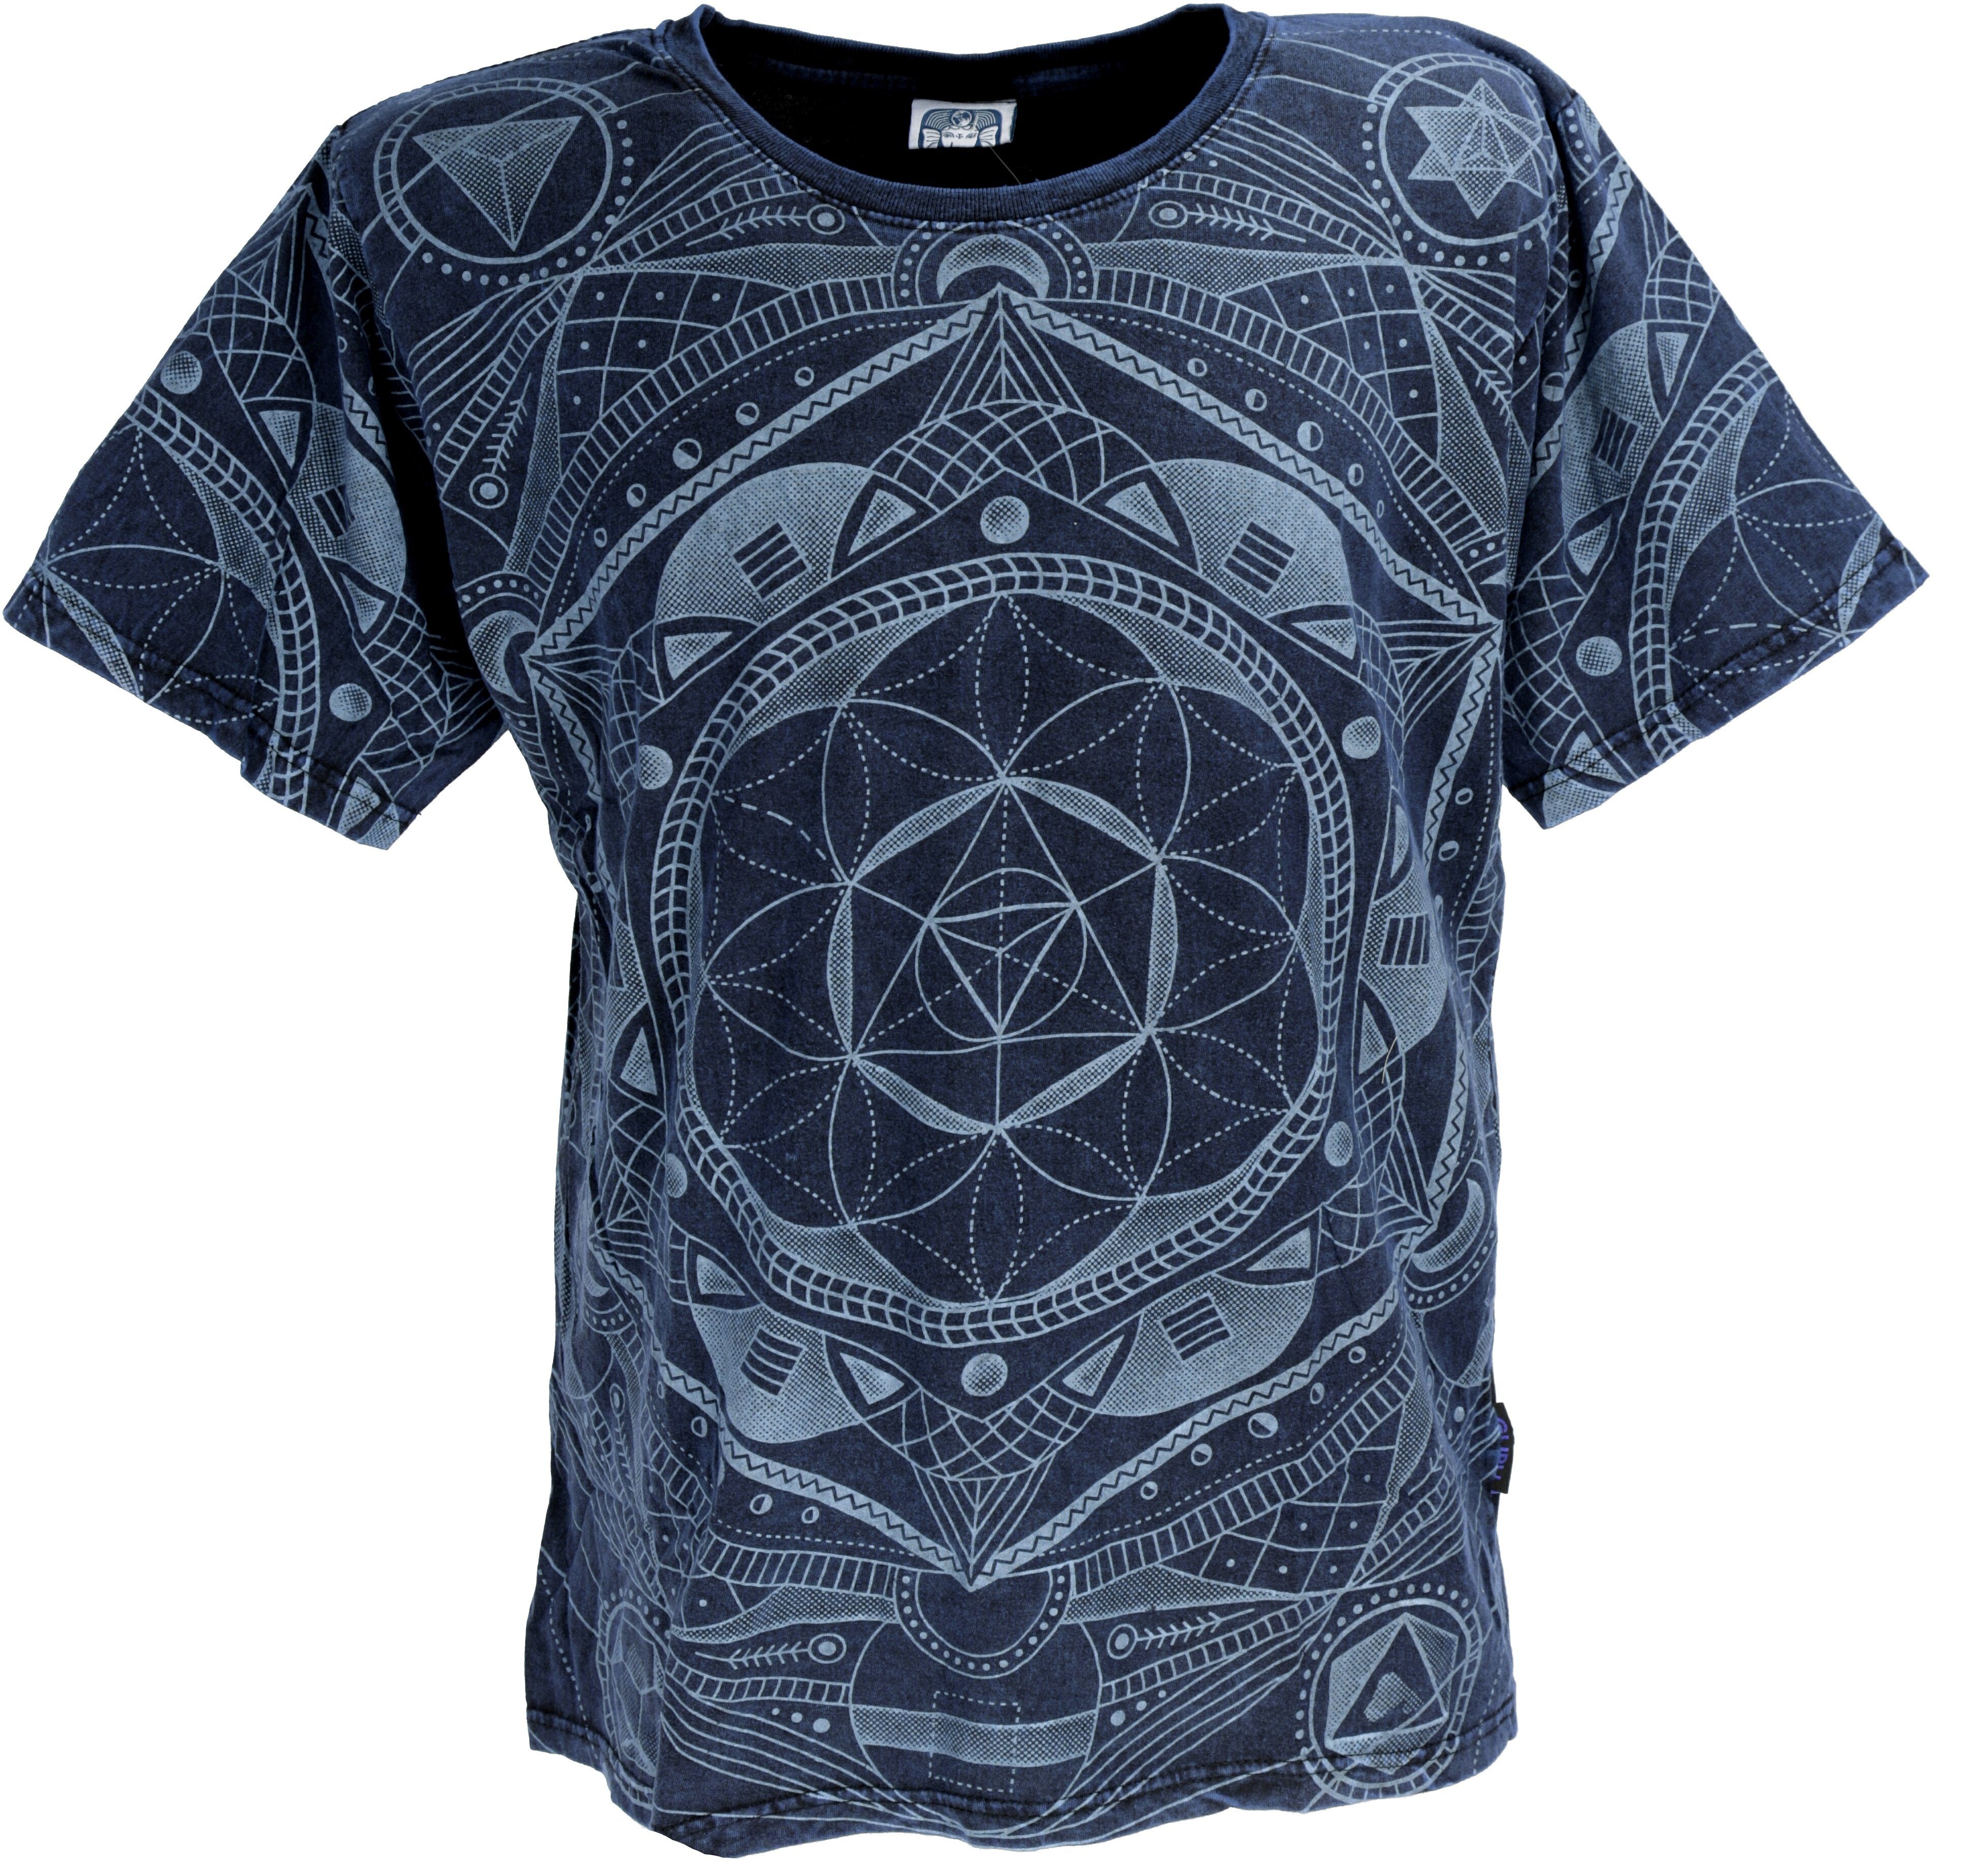 Guru-Shop T-Shirt Tibet & Buddhist Art T-Shirt, Flower of Life.. alternative Bekleidung dunkelblau